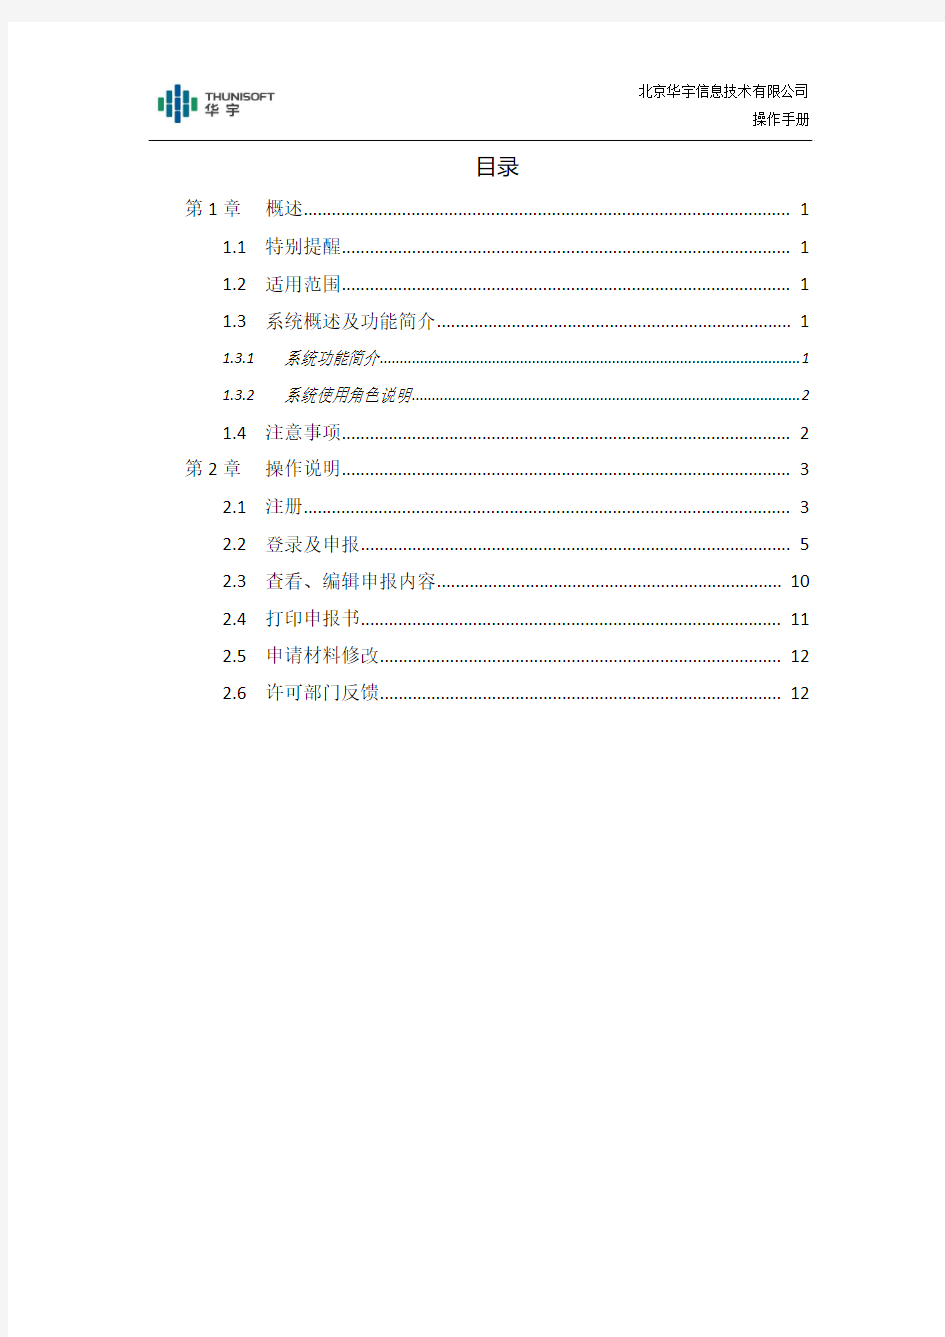 南京市行政审批系统-企业端用户操作手册V1.0